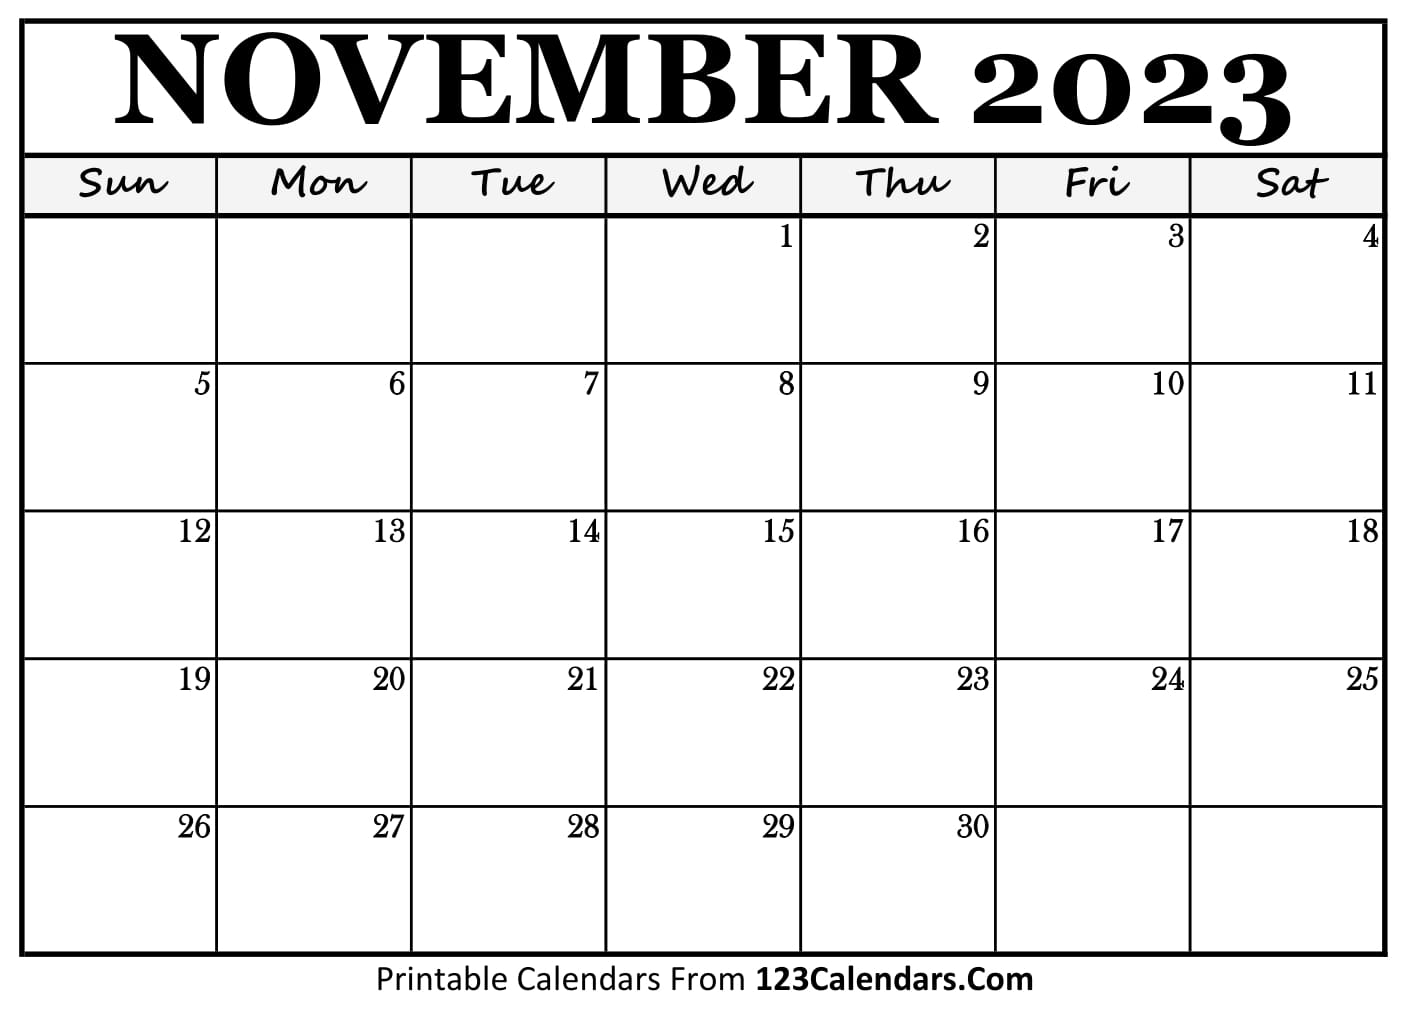 November, 2023